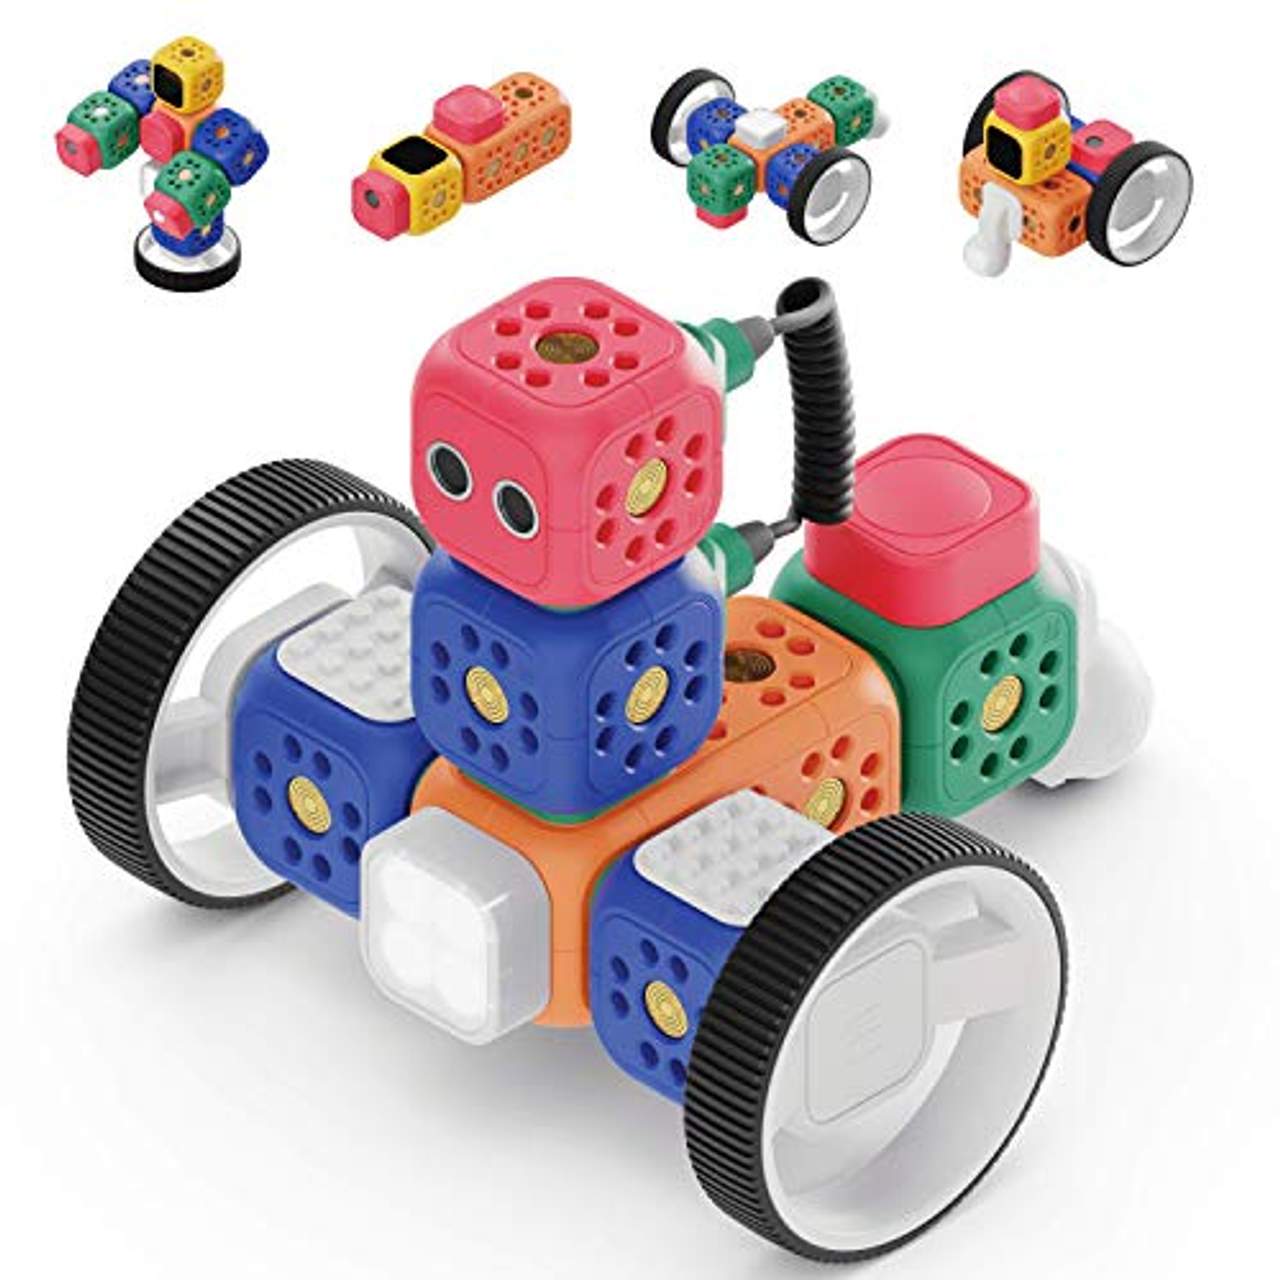 Robo Wunderkind Roboter Baukasten